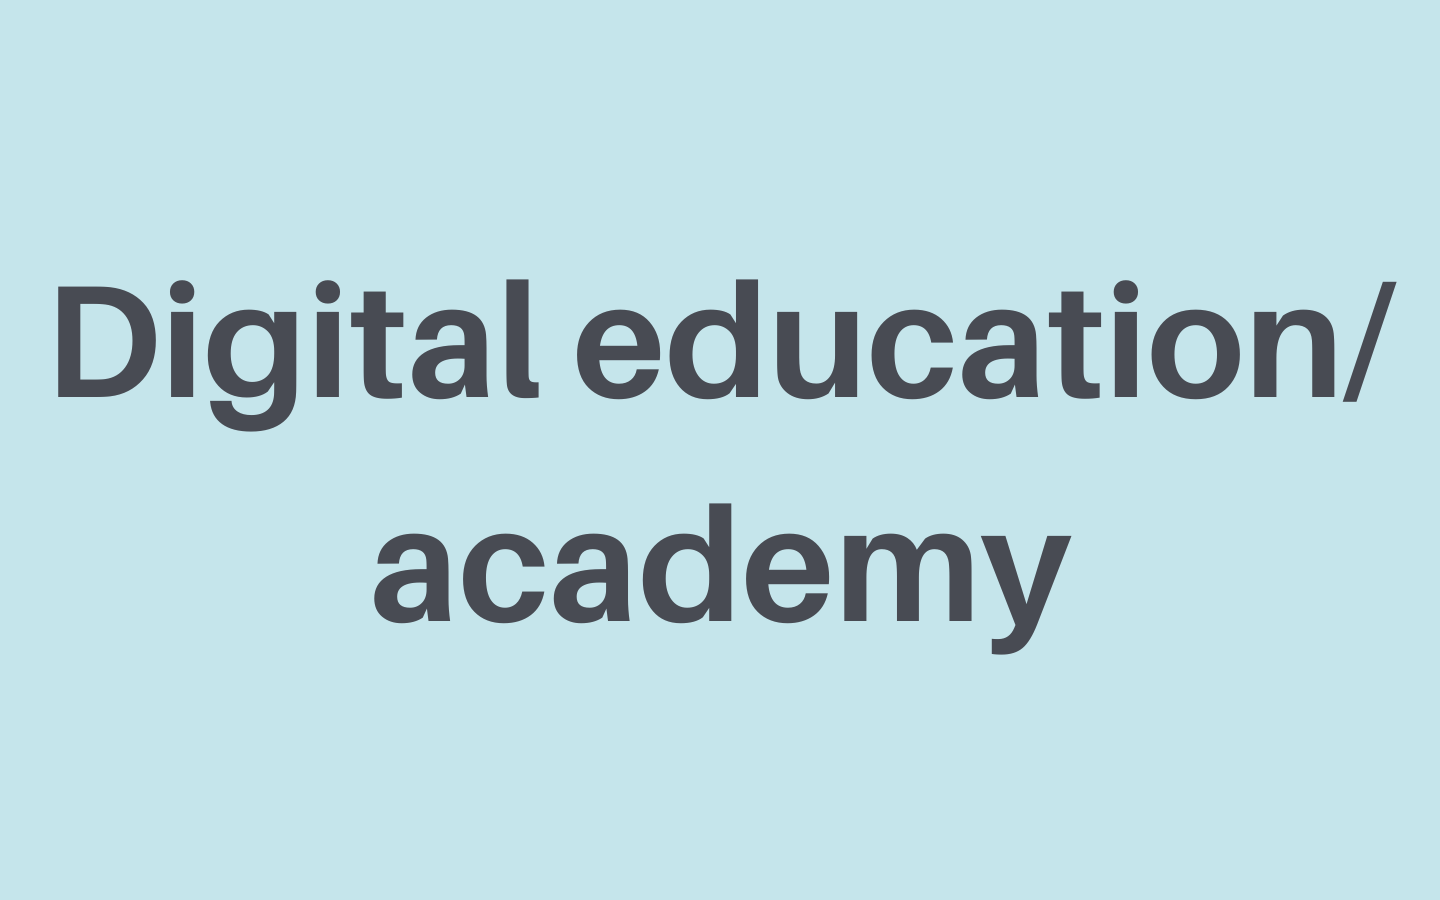 Digitale Lehre_ Akademie 1